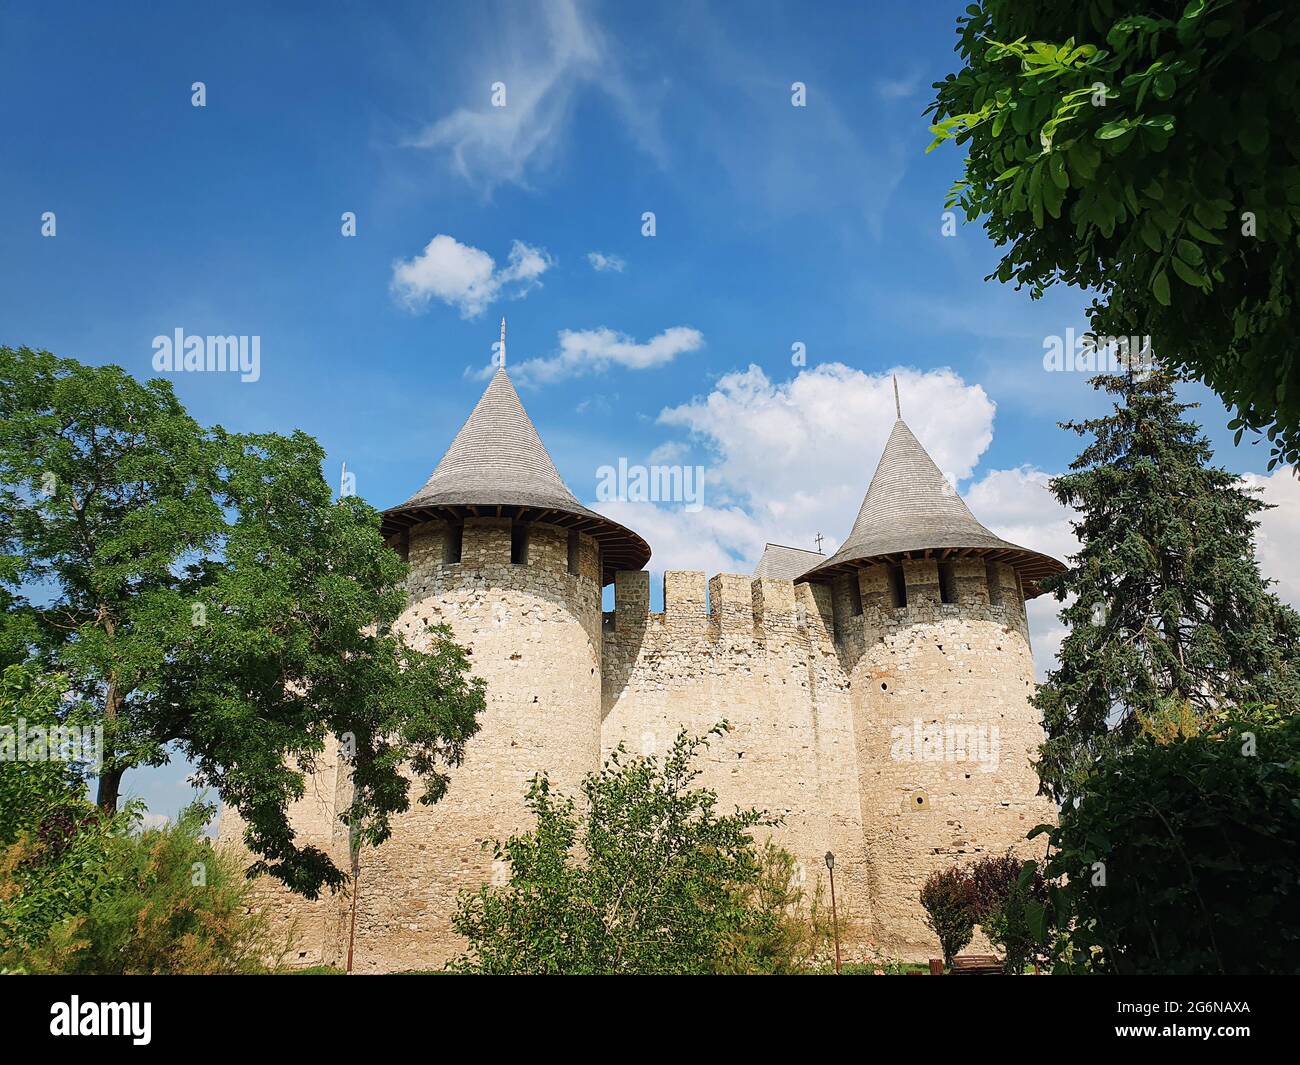 Soroca Festung Blick von außen. Alte Militärfestung, historisches Wahrzeichen in Moldawien. Außenfassade, alte Steinmauern Befestigungsanlagen, Schlepptau Stockfoto